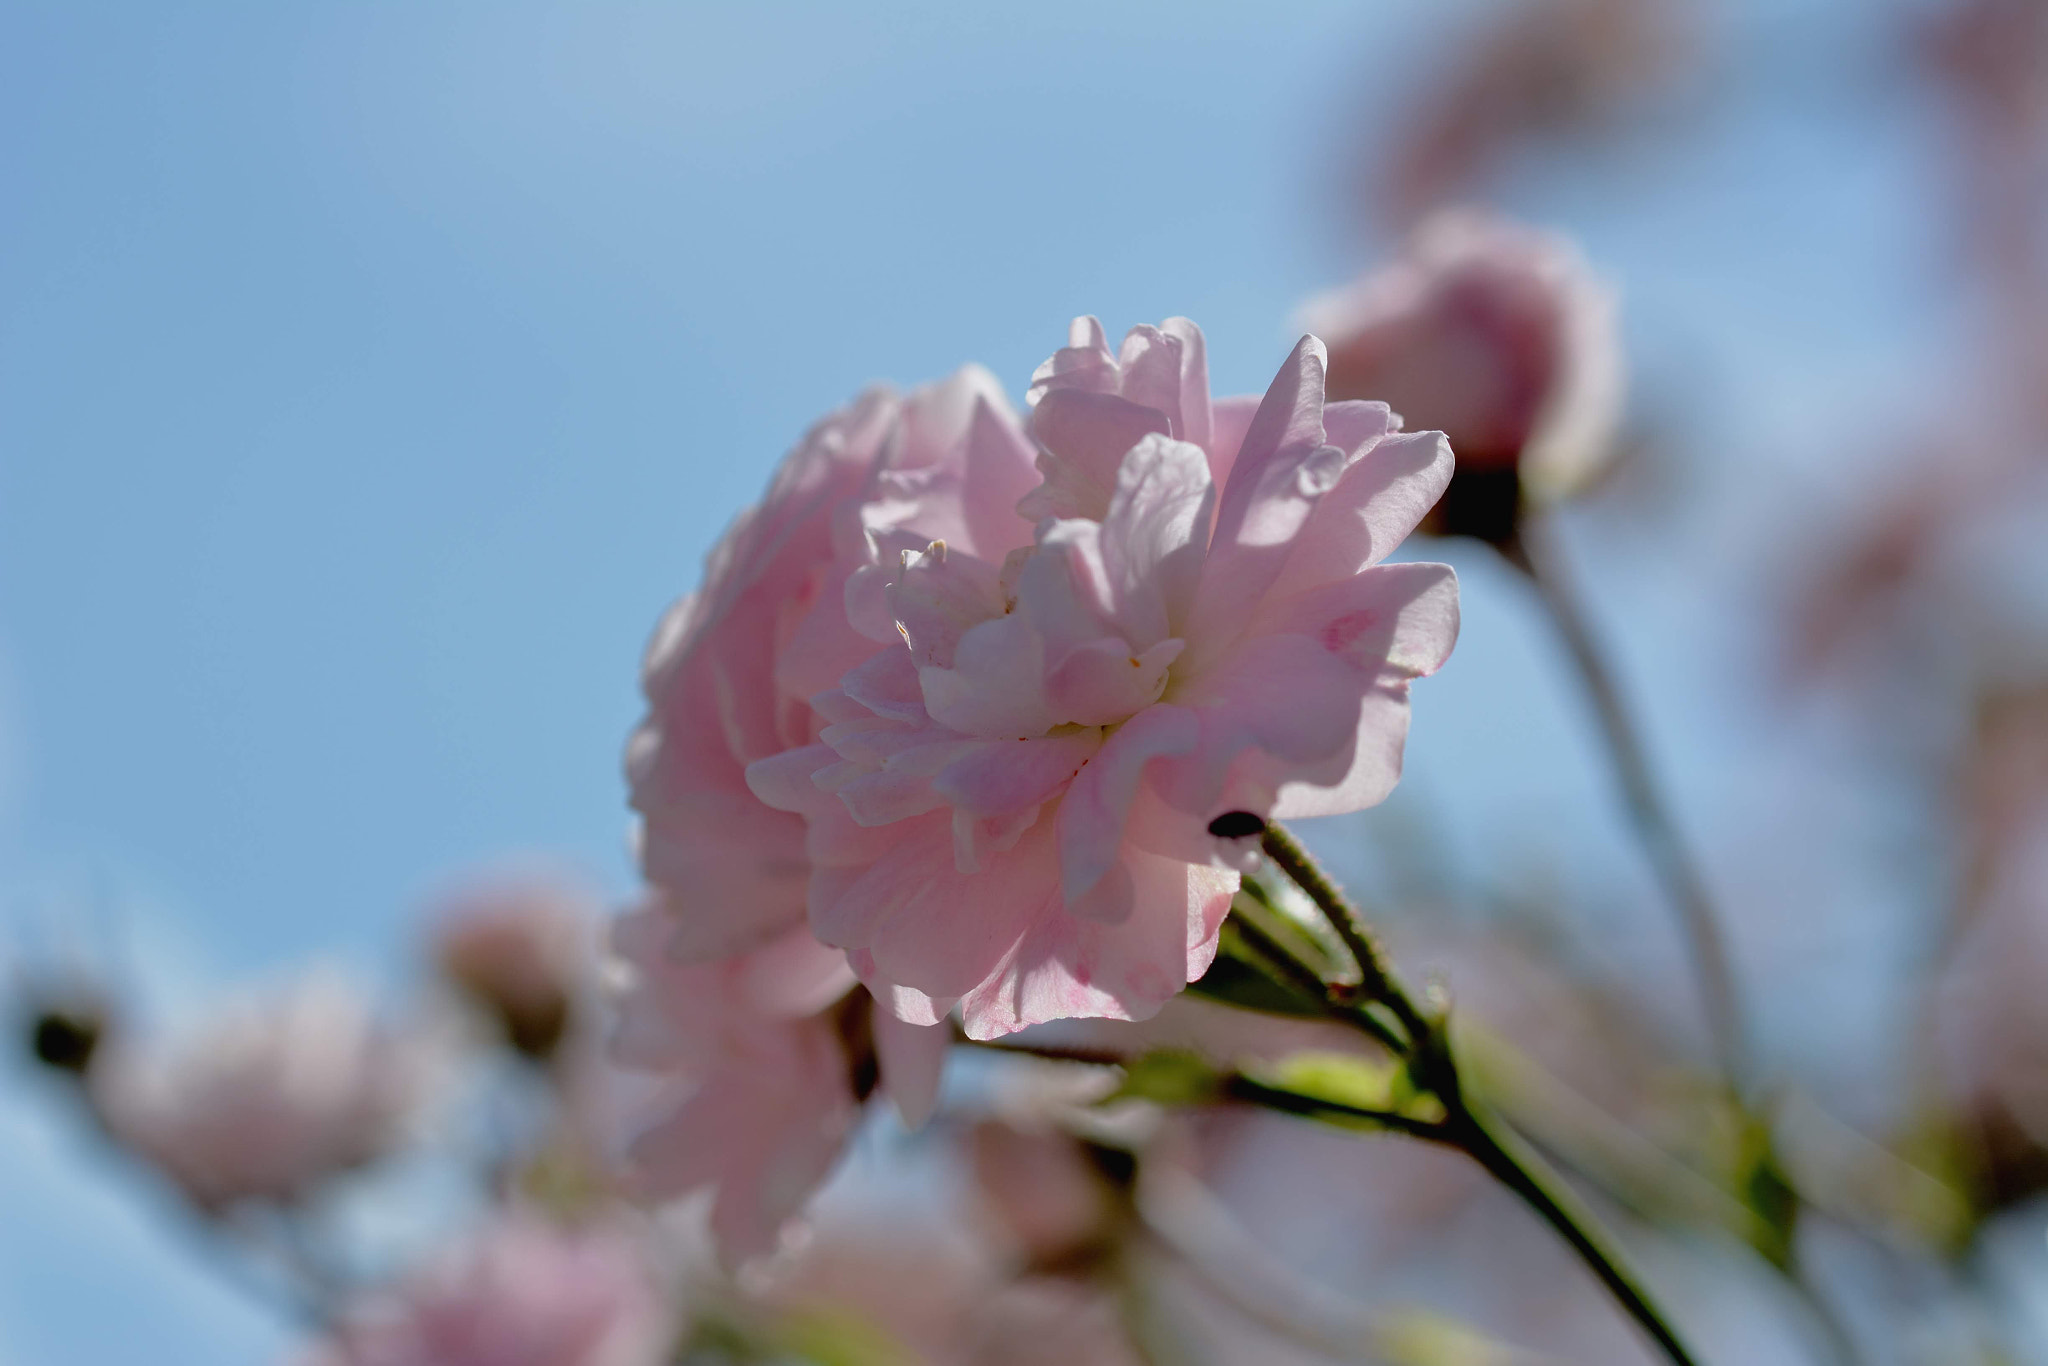 Nikon D7100 sample photo. Pink rose photography